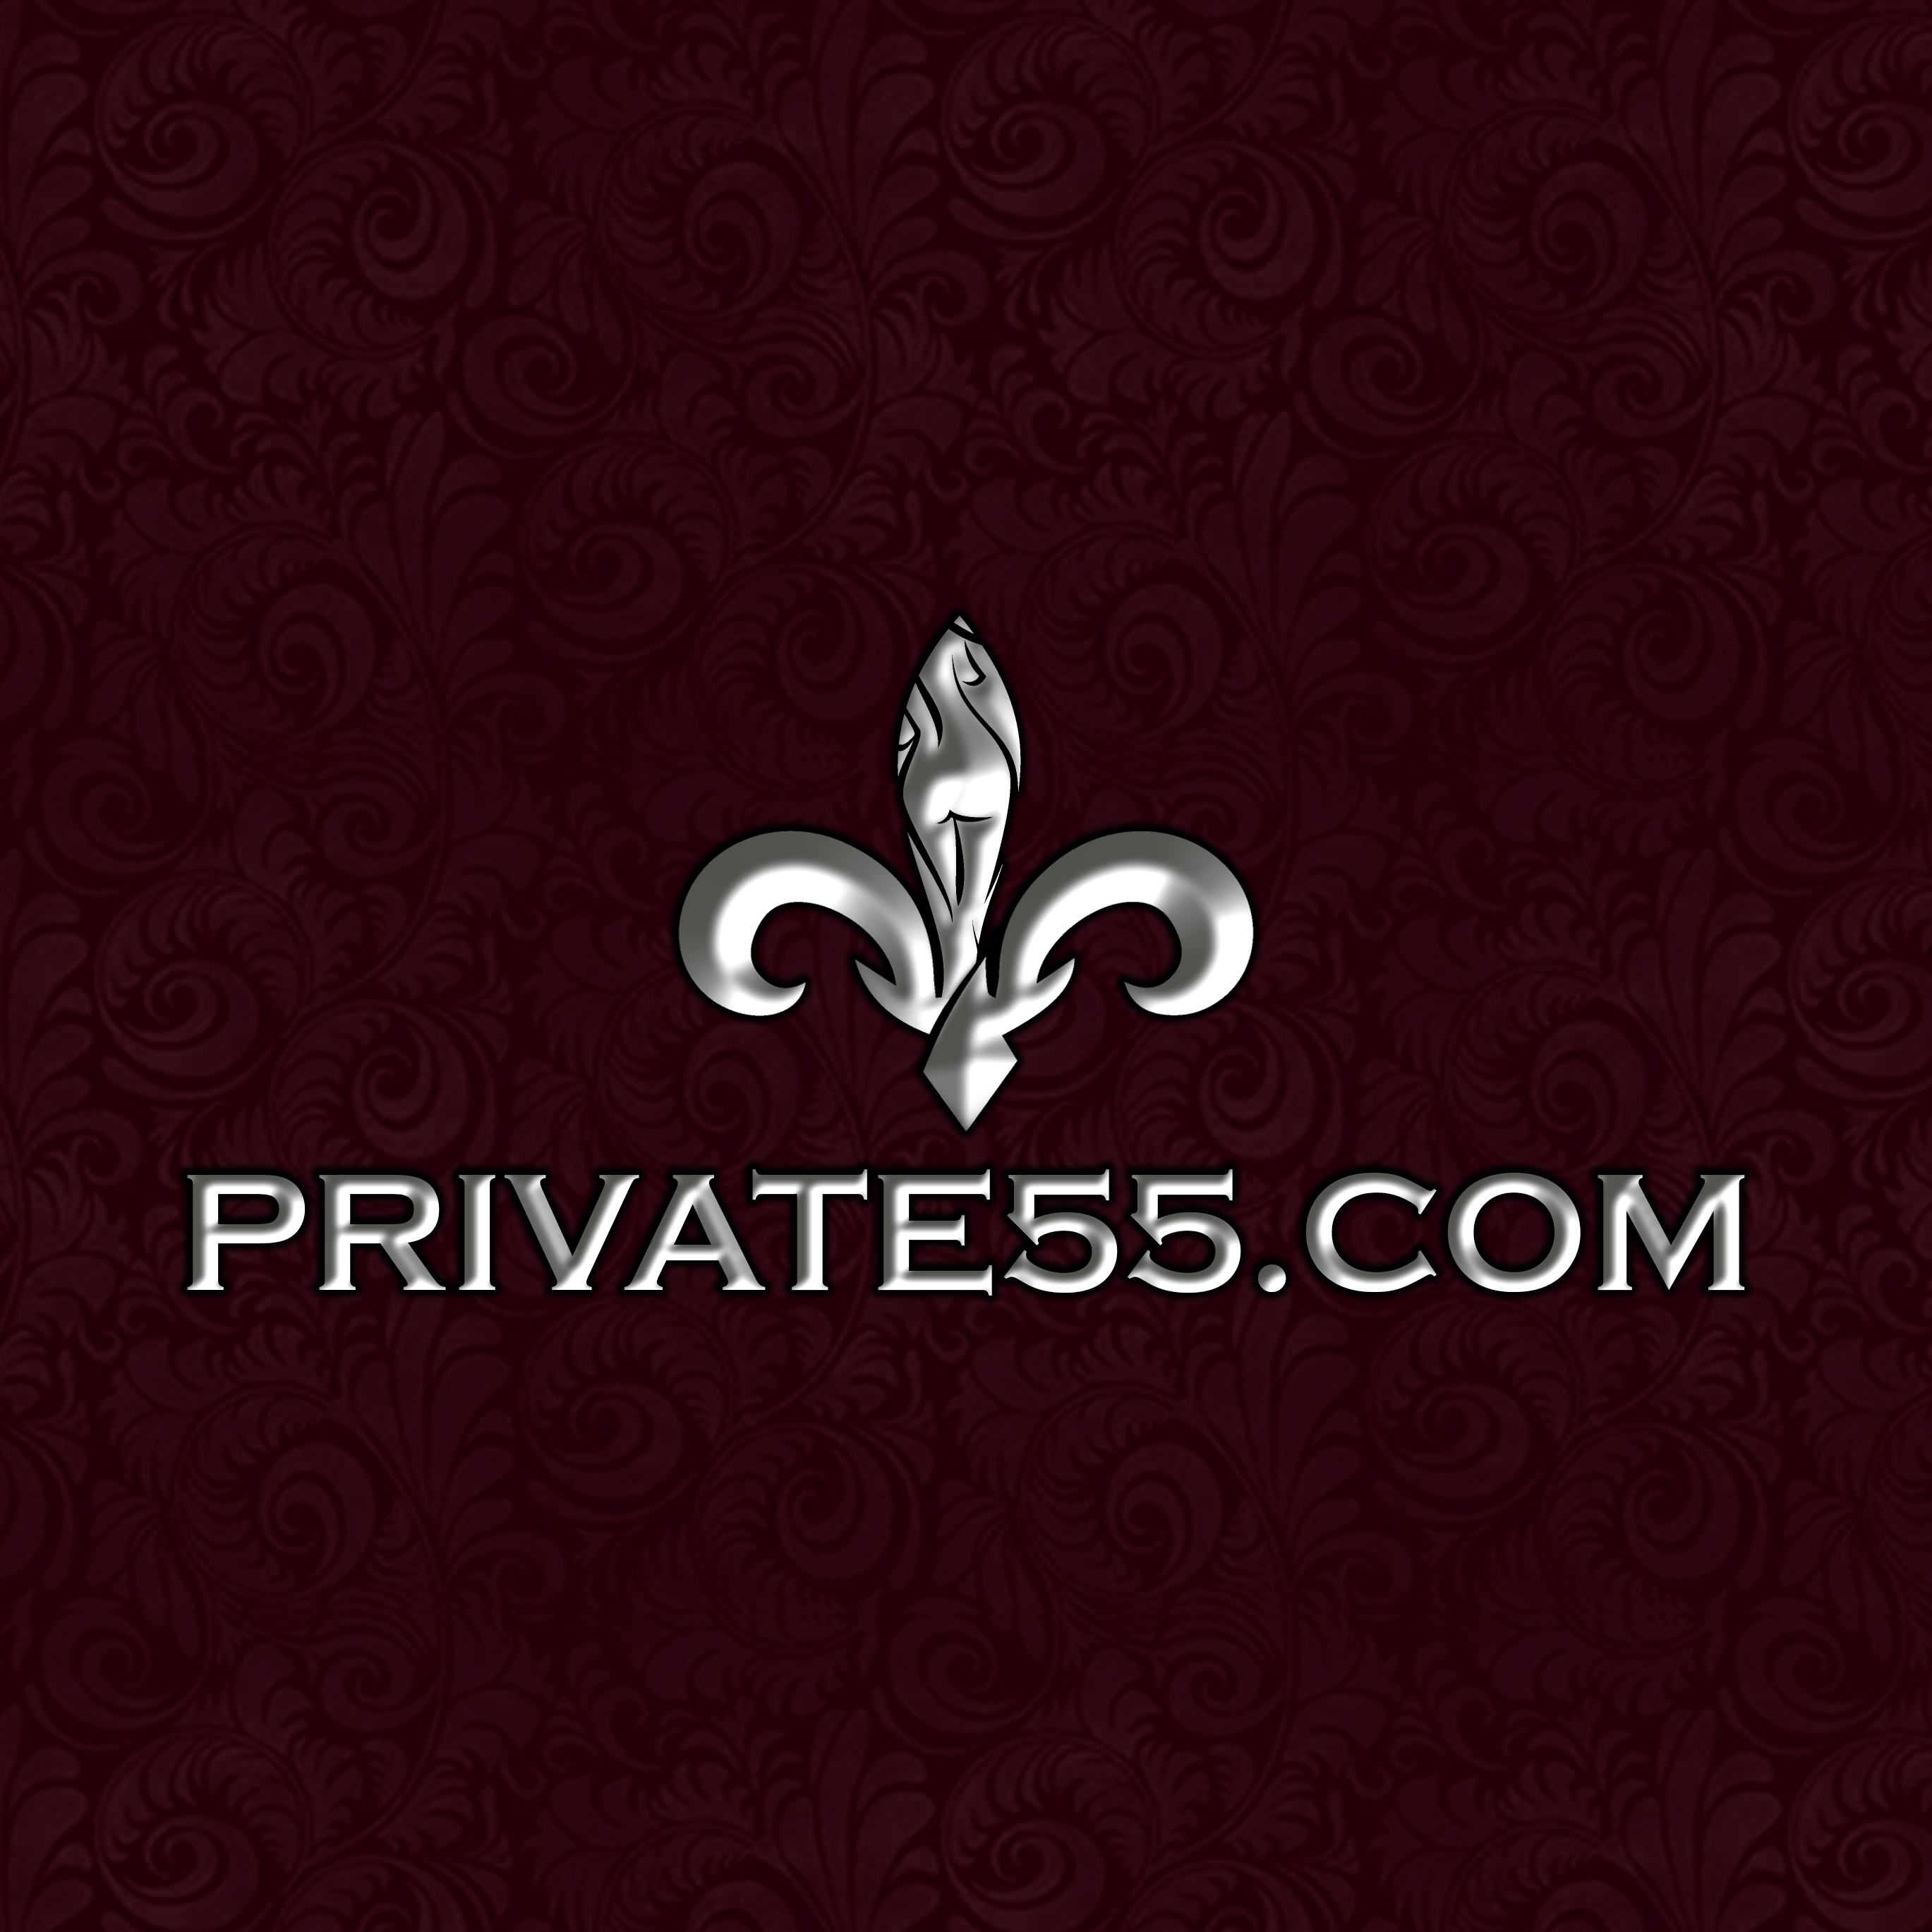 www.private55.com